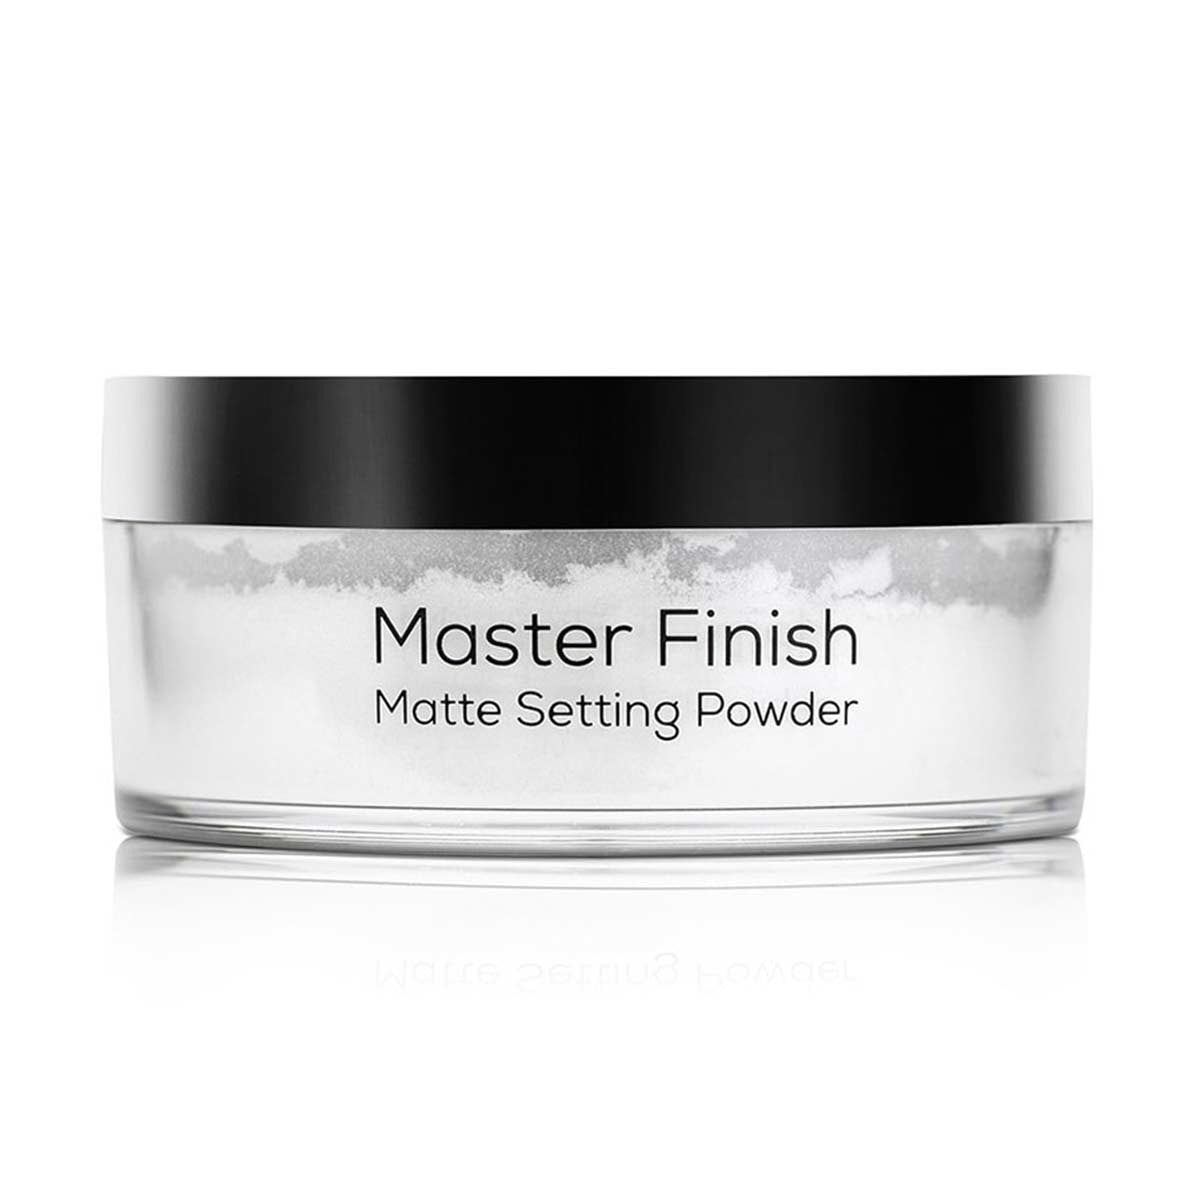 Wow Matte Setting Powder - Master Finish